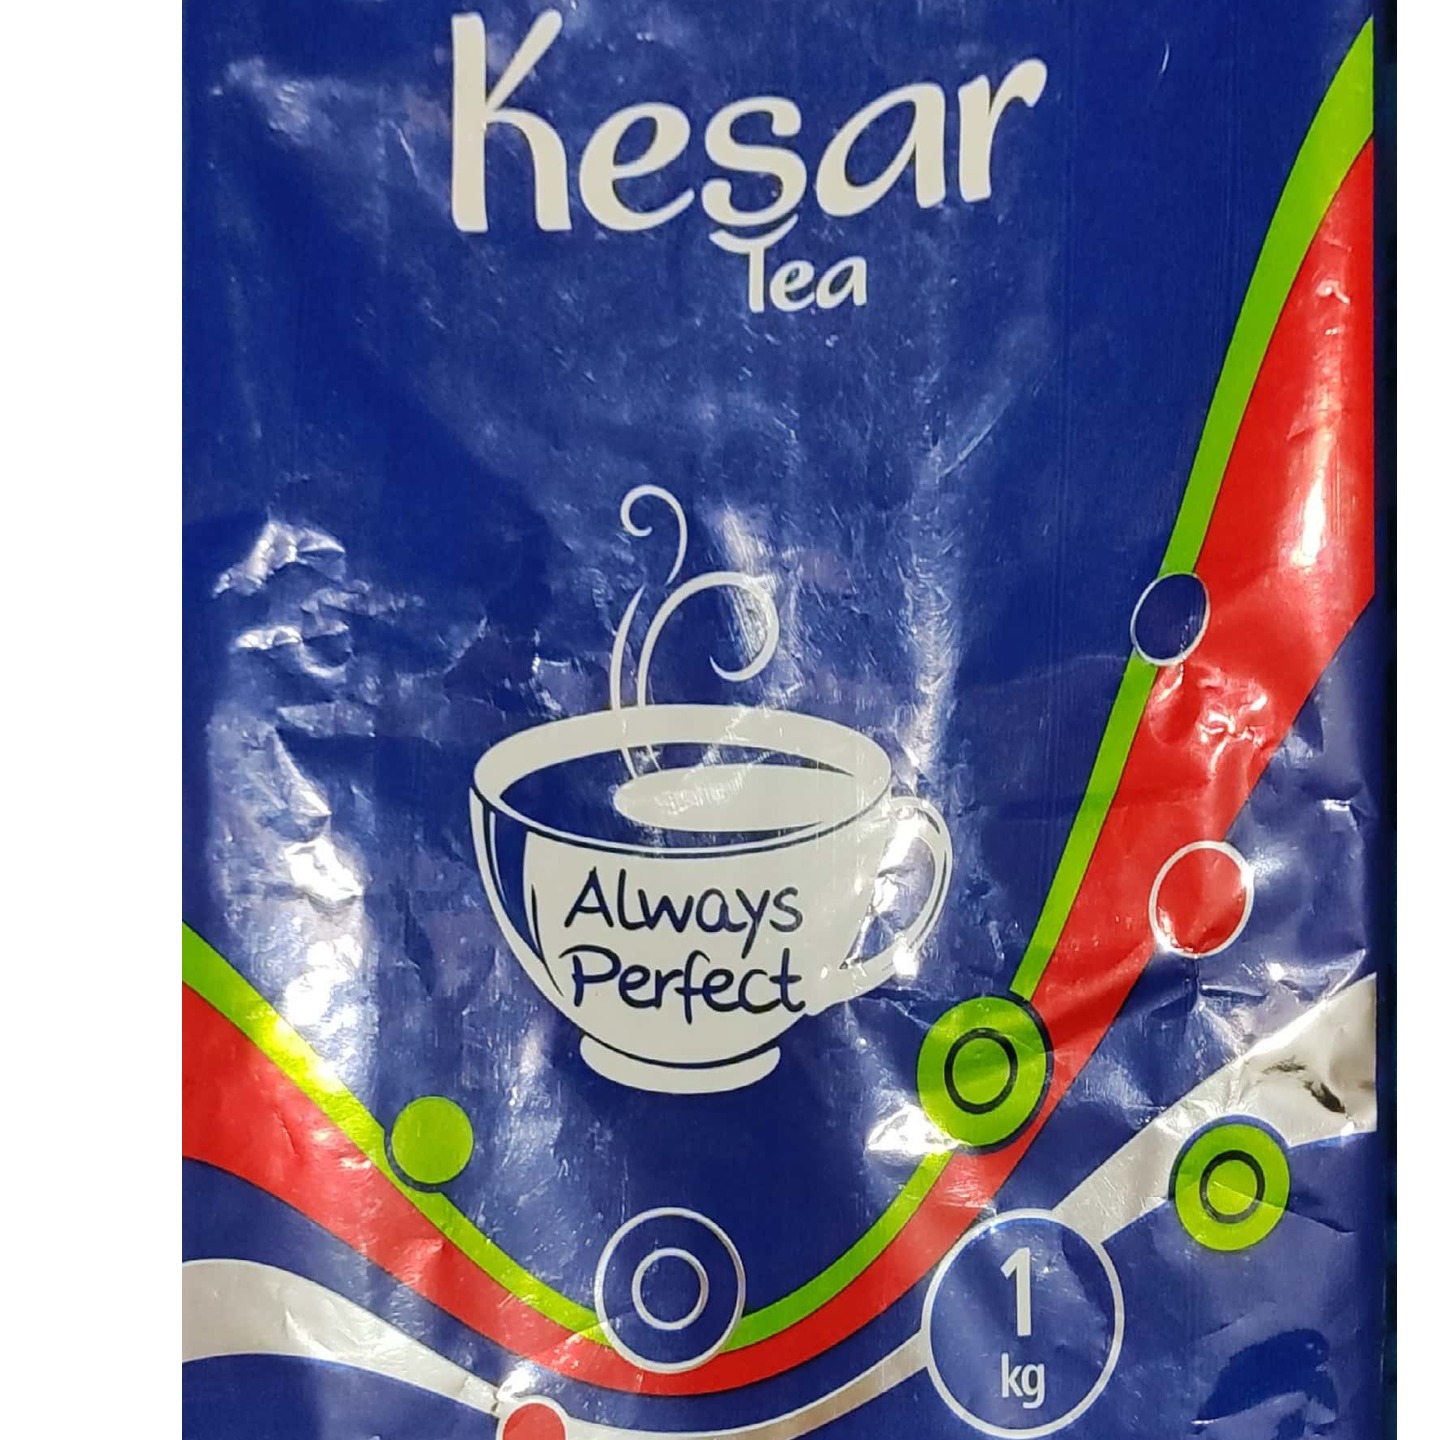 Keasr Tea